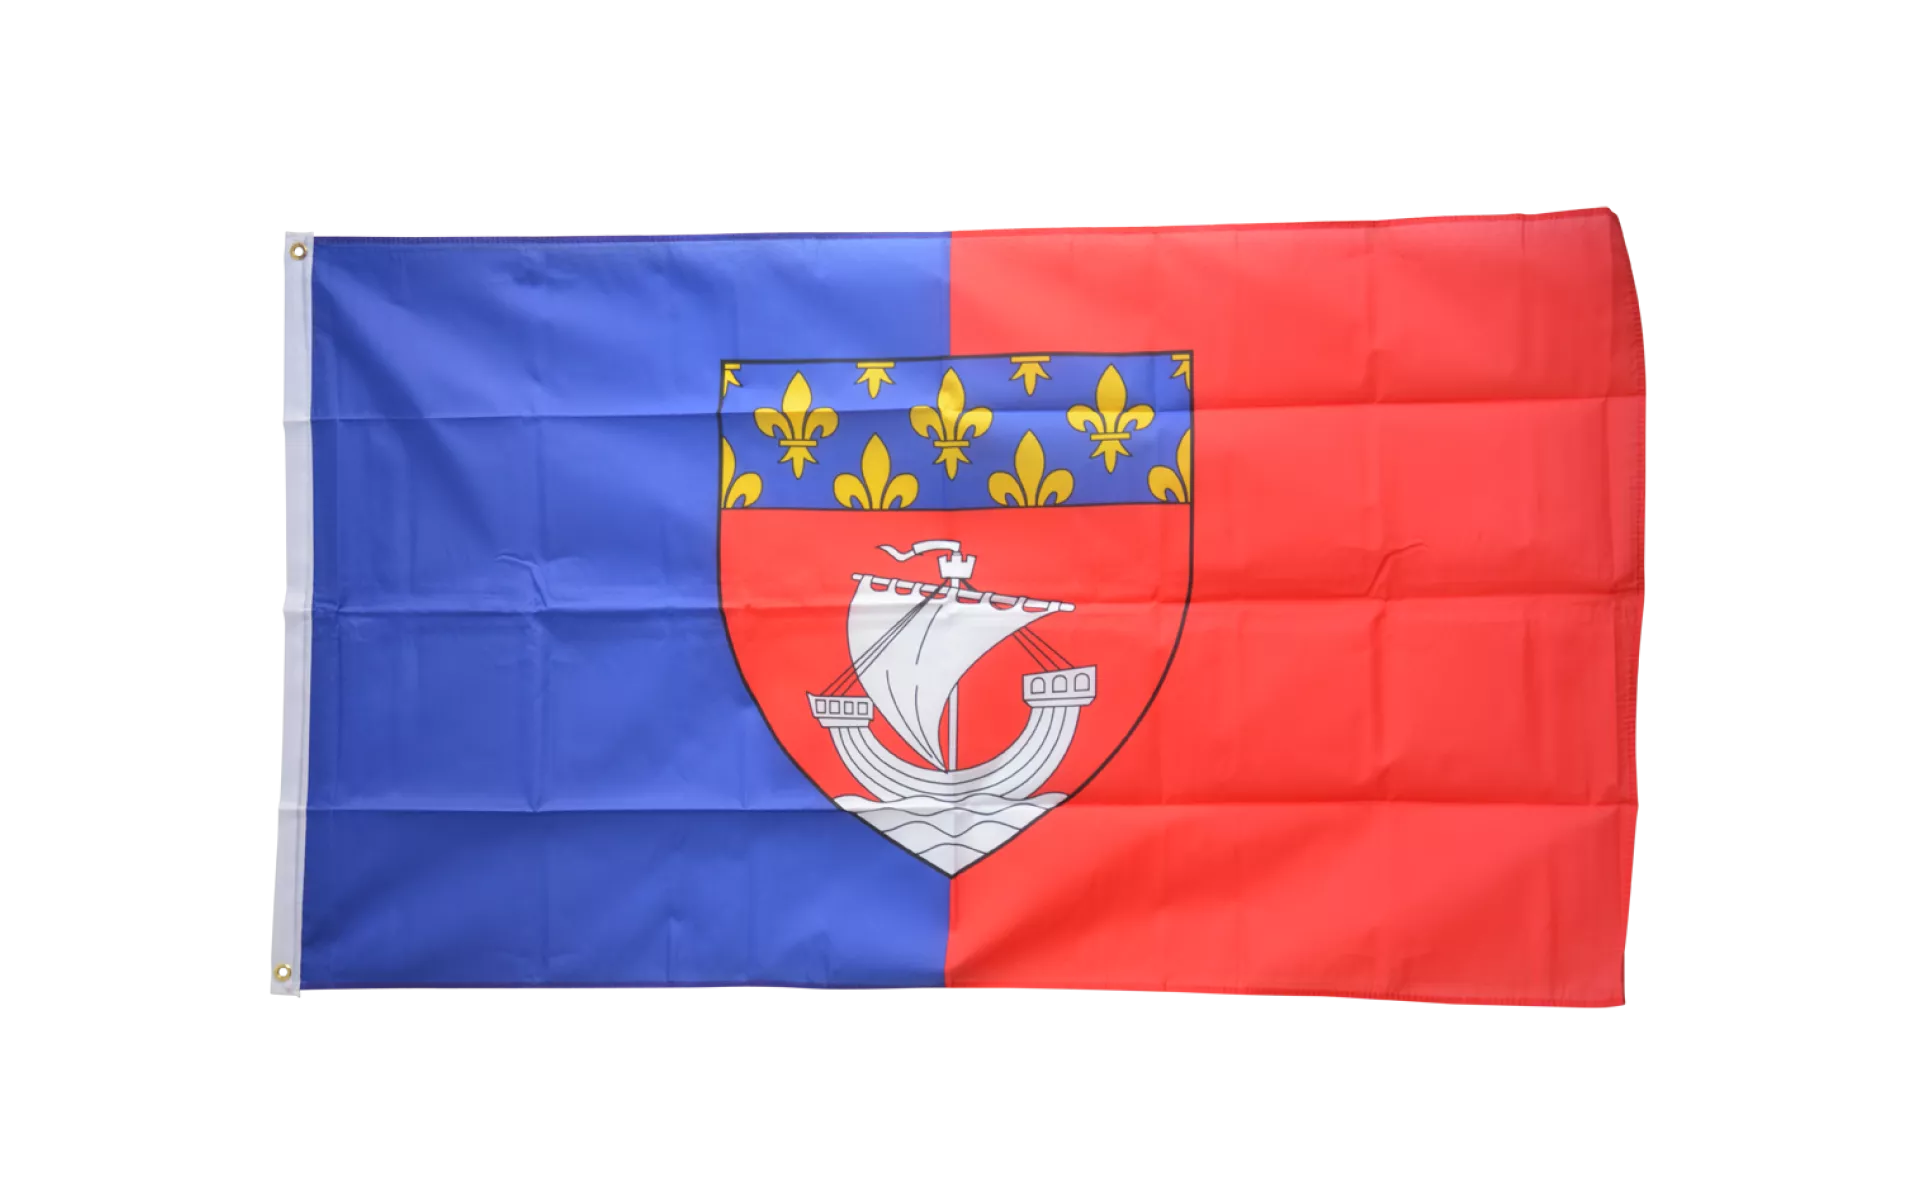 Flagge Frankreich kaufen